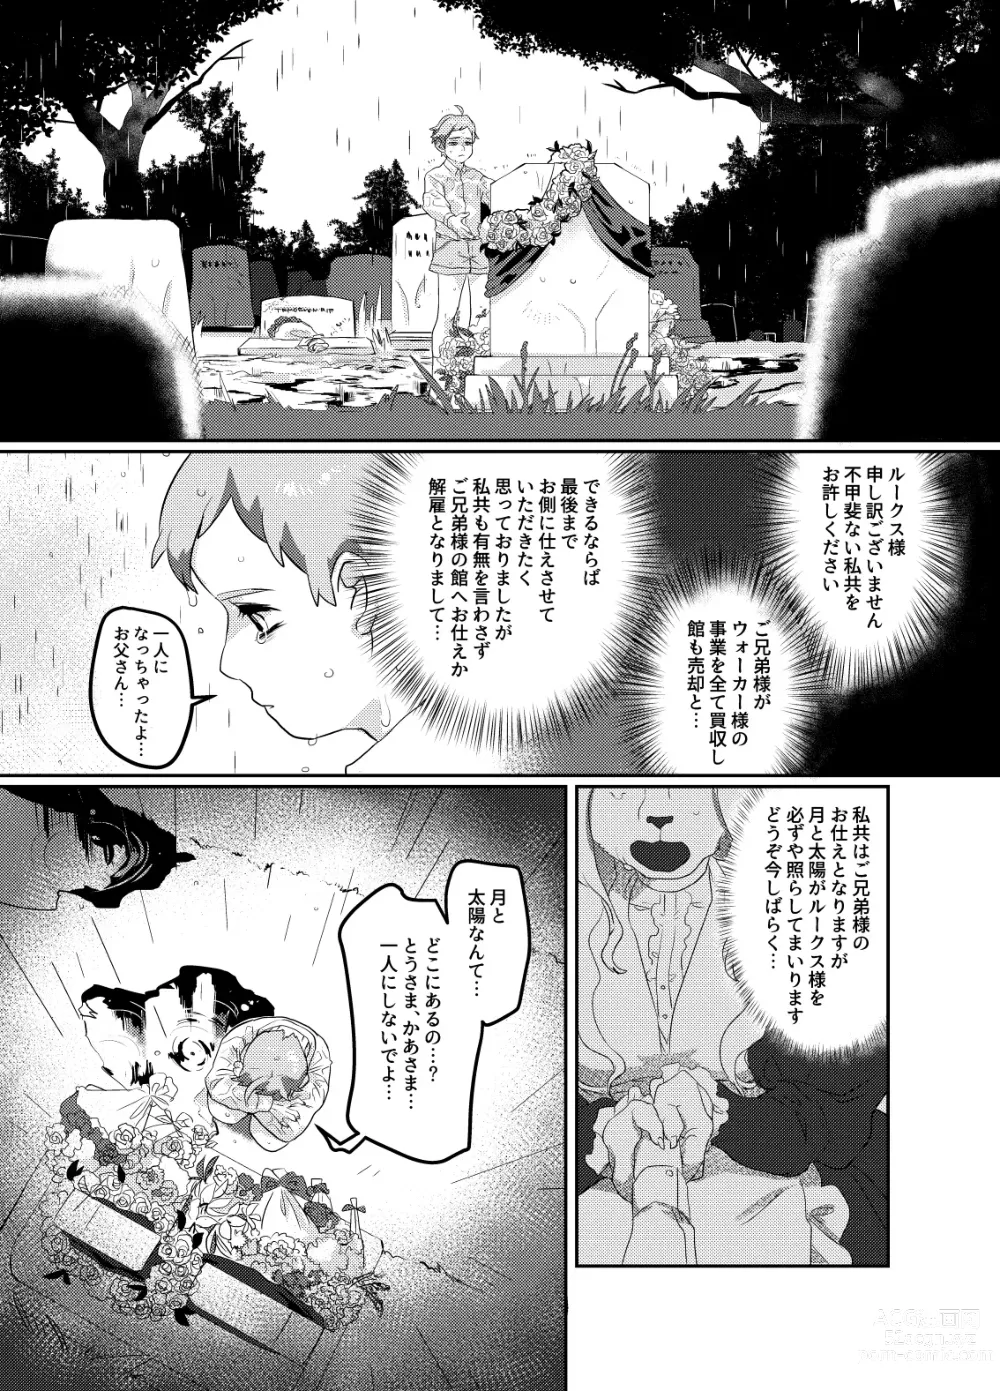 Page 5 of doujinshi Meido inHEAVEN